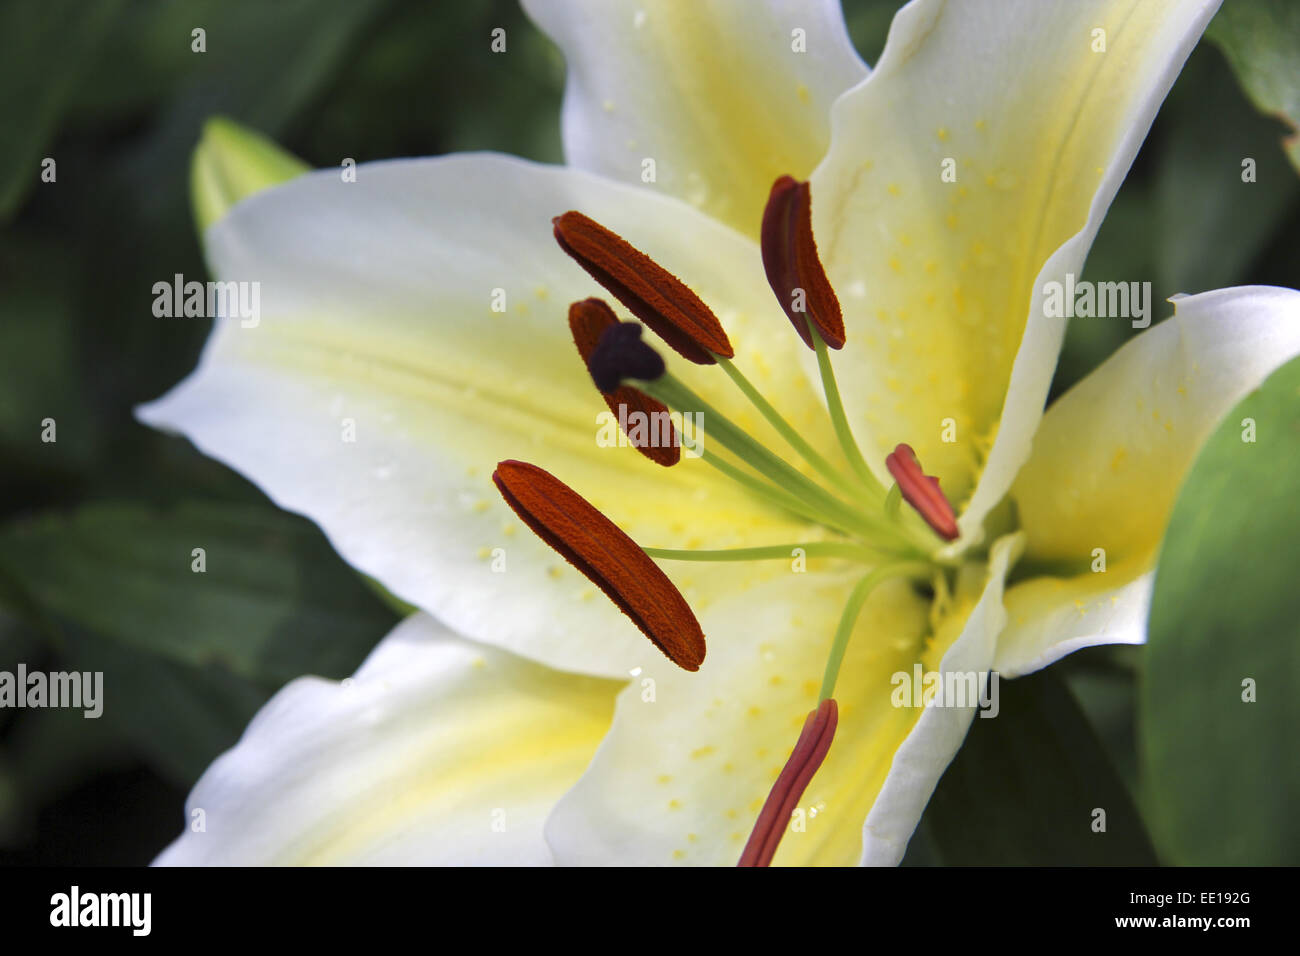 Weisse Königslilie, Lilium Regale, weiße Lilie, Blume, Blüte, Royal Lily, Zilie Regale, Botanik, Nahaufnahme, Detail, Natur, Pflanze, Stockfoto